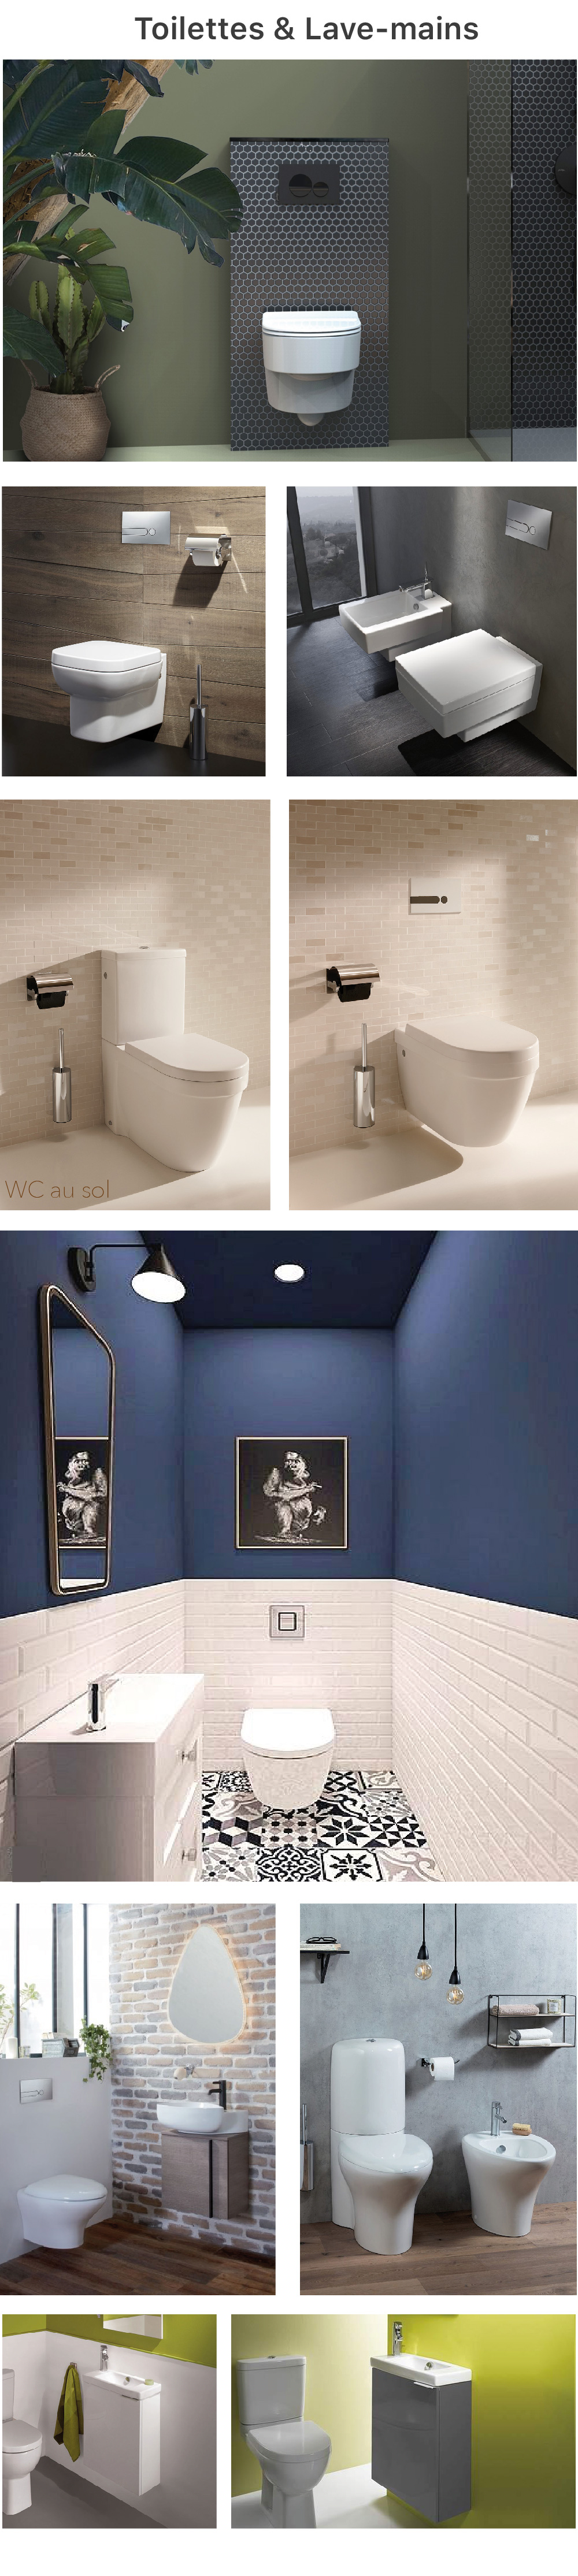 salle de bains/WC 2021 2